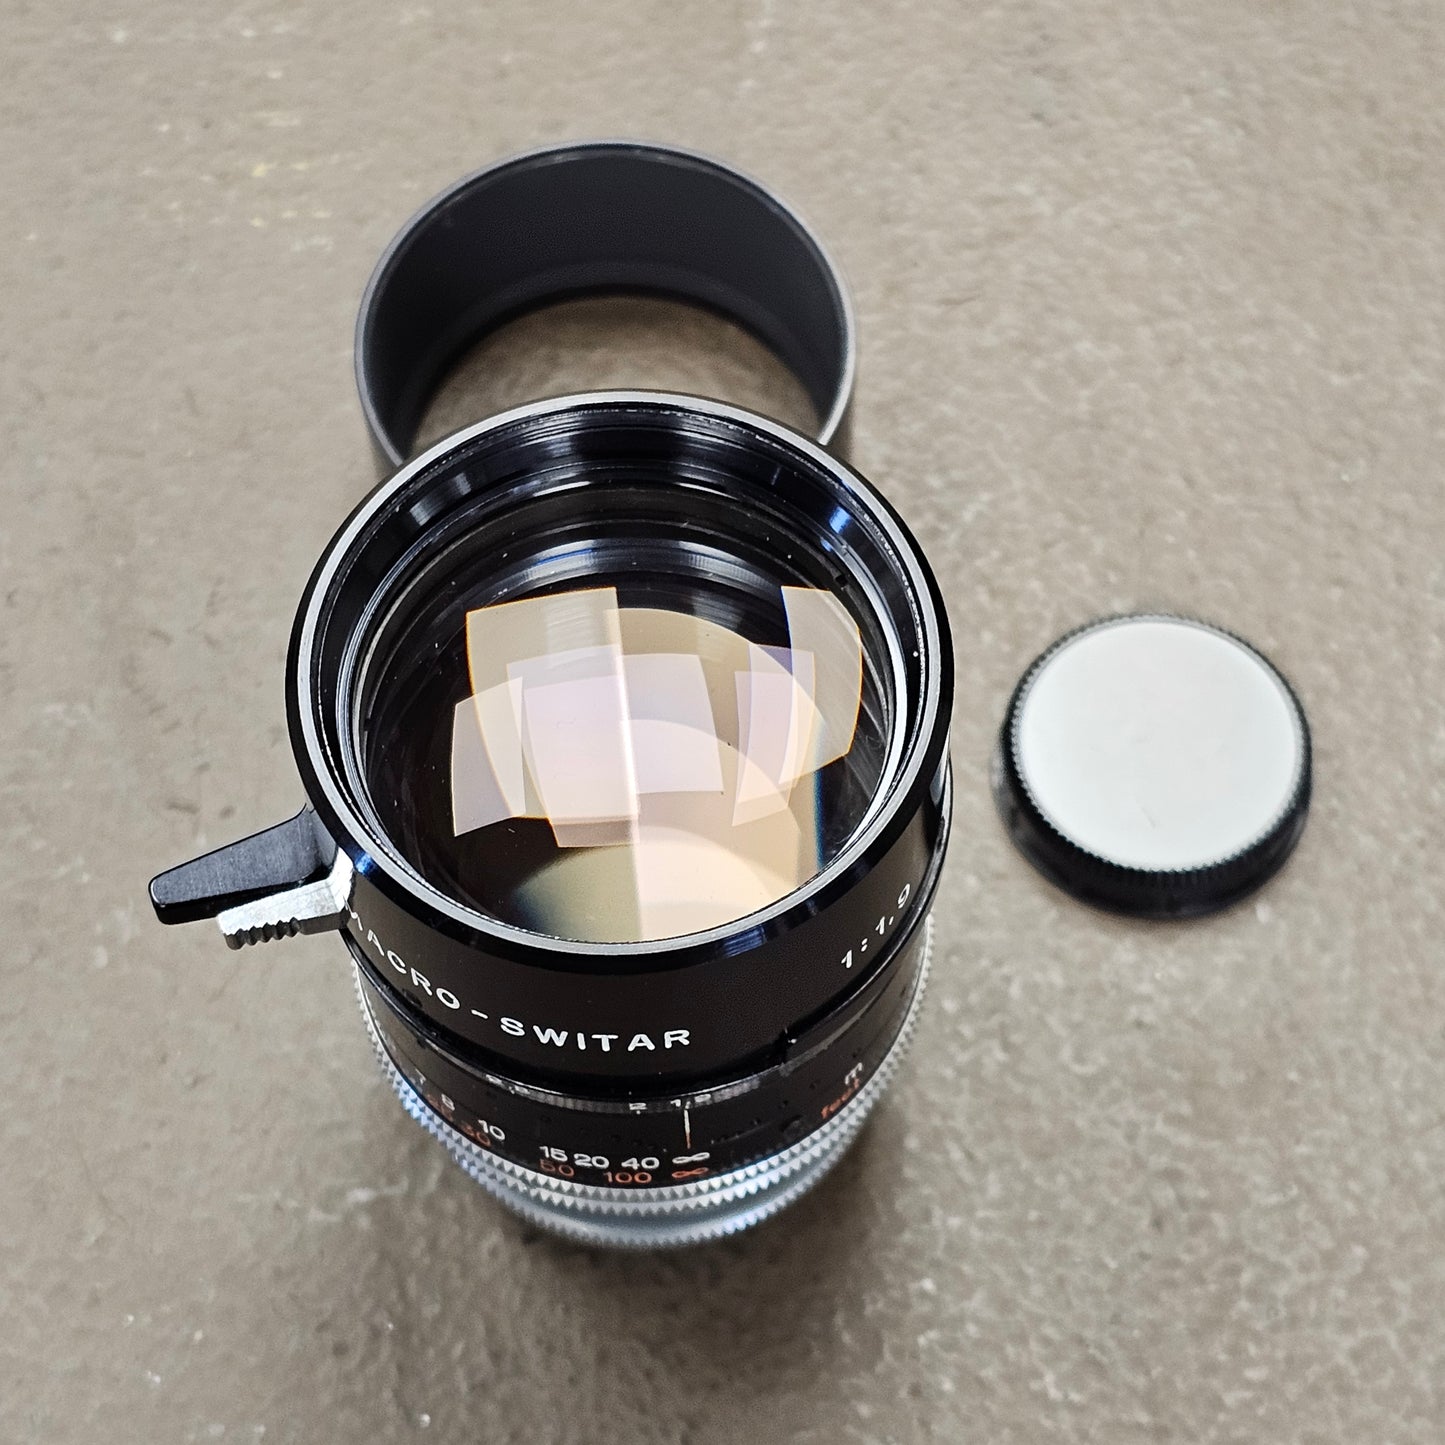 Switar 75mm Macro Preset f1.9 C-Mount Telephoto Lens S# 1131180